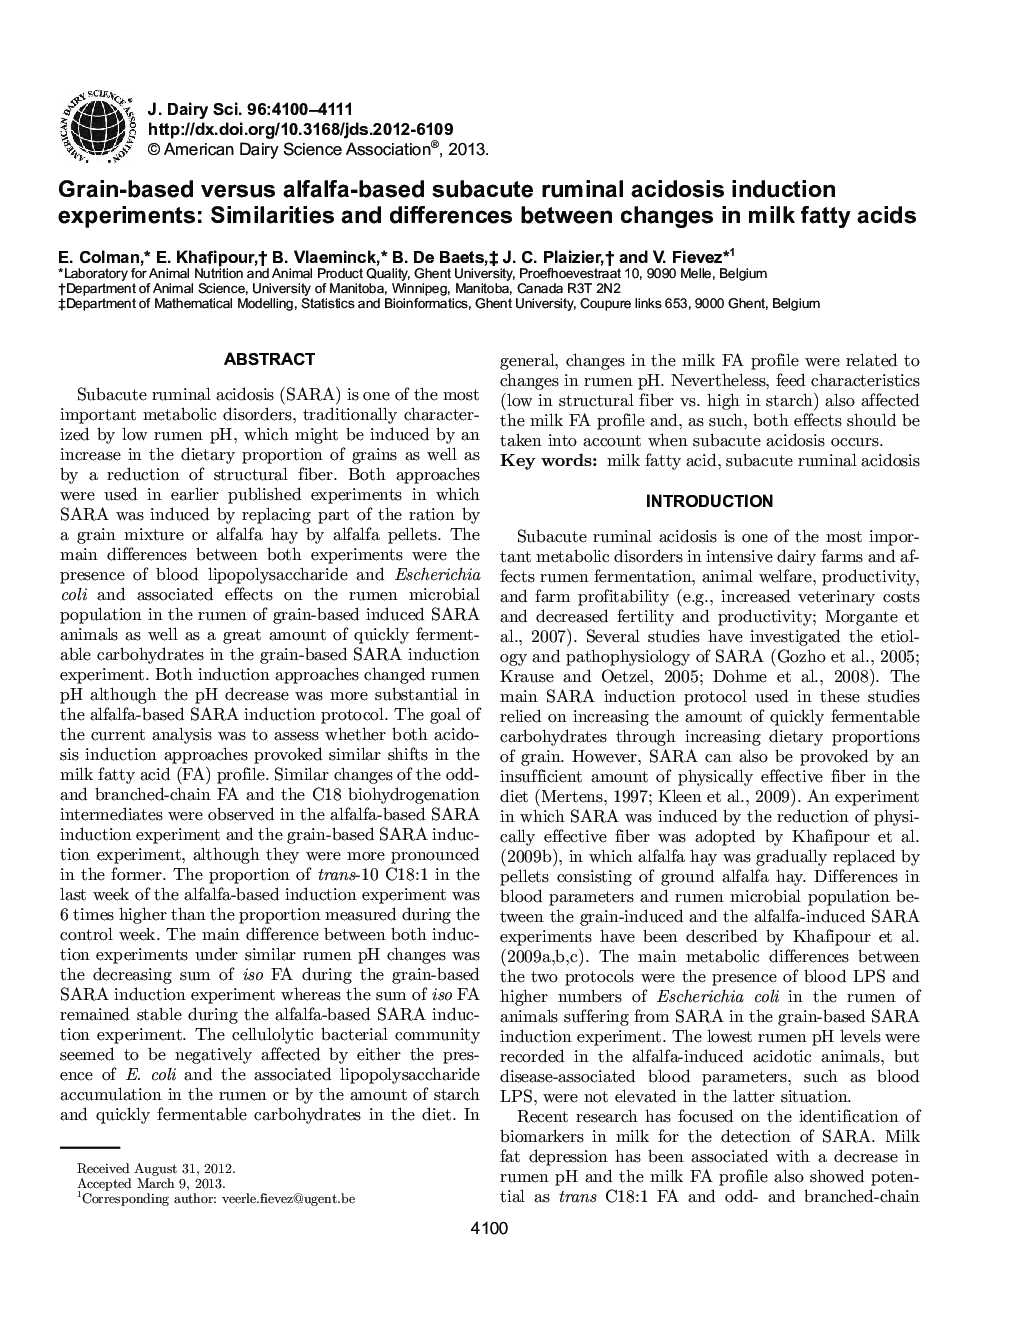 آزمایشات القاء اسیدوز رامینال بر پایه یونجه و مبتنی بر یونجه: شباهت ها و تفاوت های بین تغییرات اسید های چرب شیر 